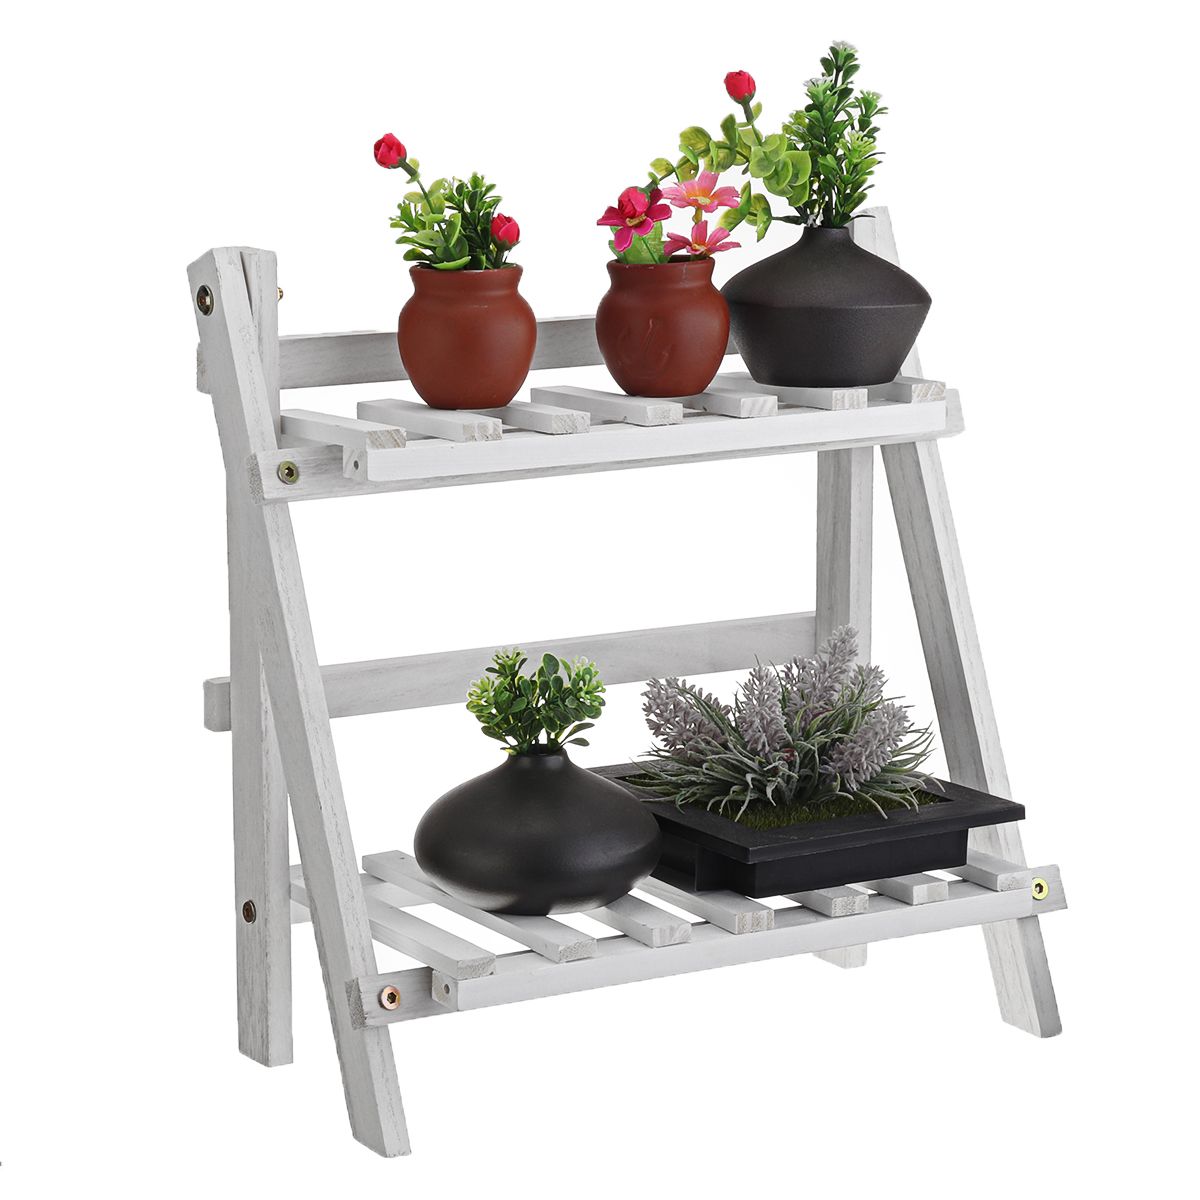 2Tier-Wooden-Shelves-Flower-Pot-Plant-Stand-Display-Indoor-Outdoor-Garden-Patio-1742008